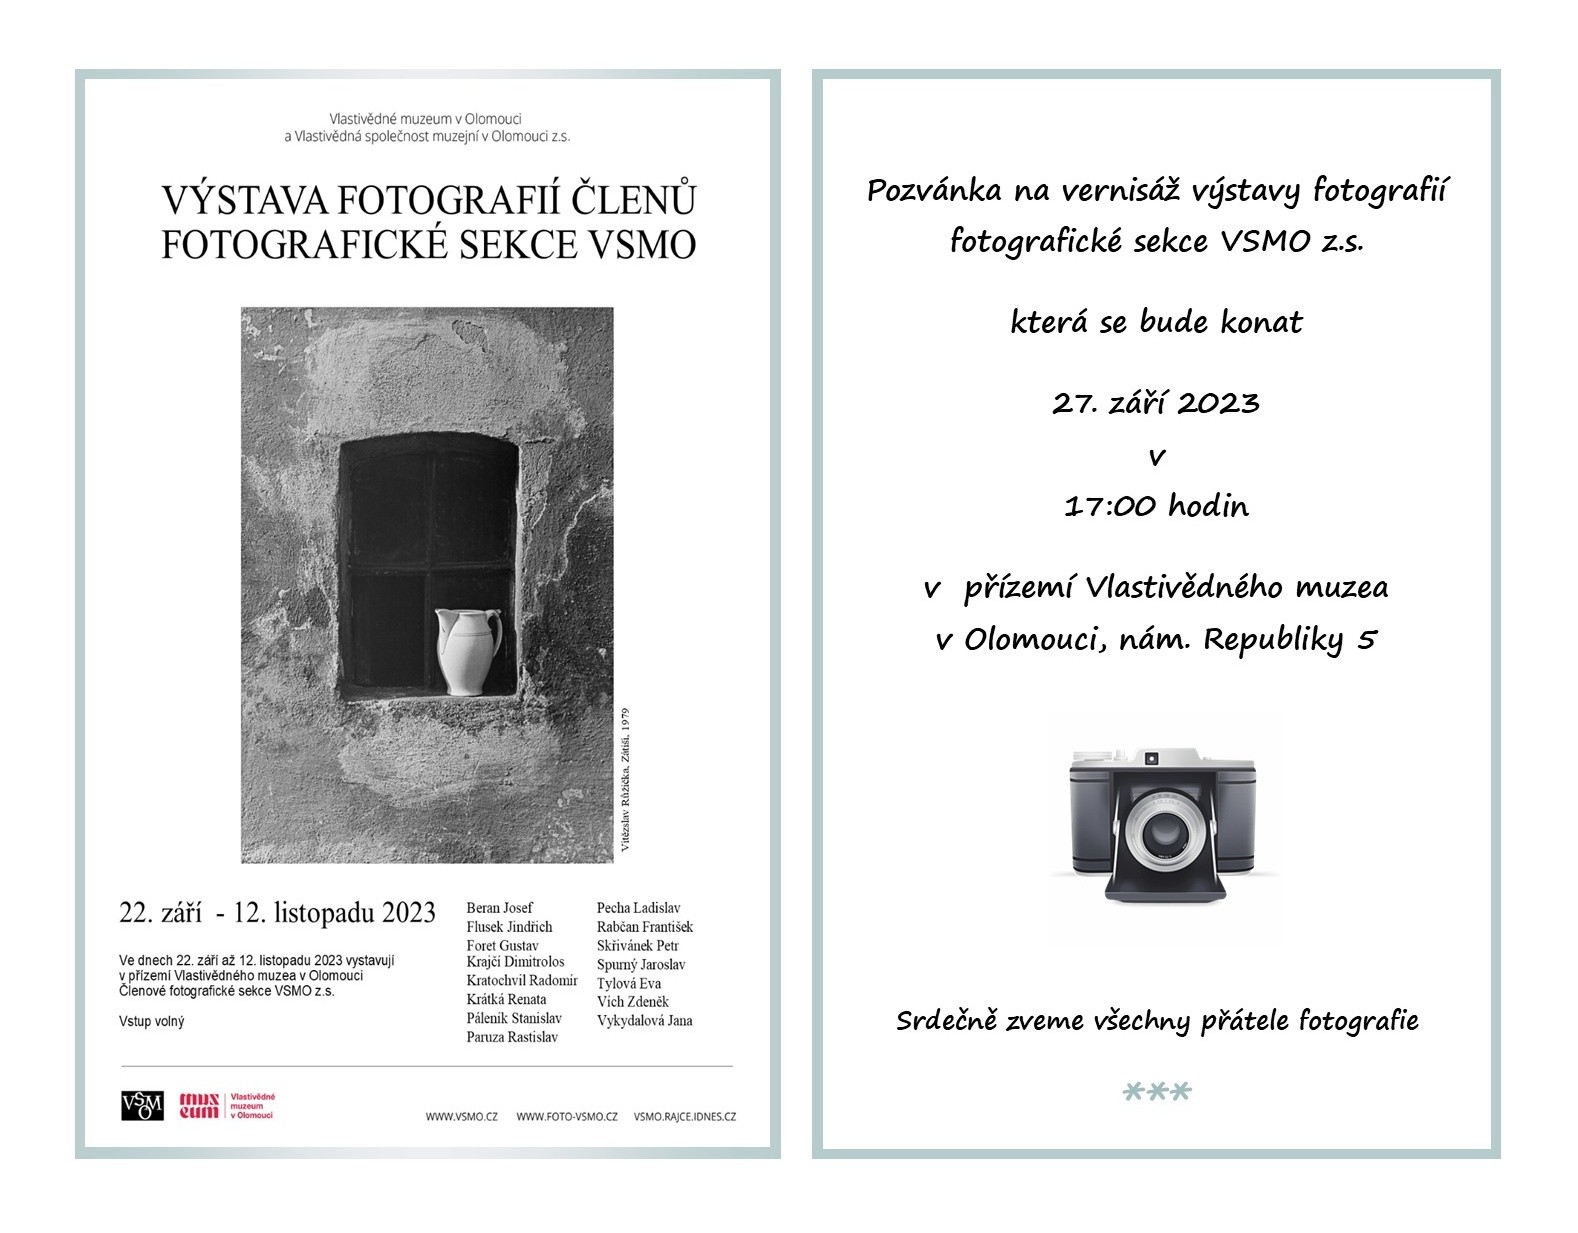 pozvanka-vystava-fotosekce-vsmo-2023-v-muzeu.jpg